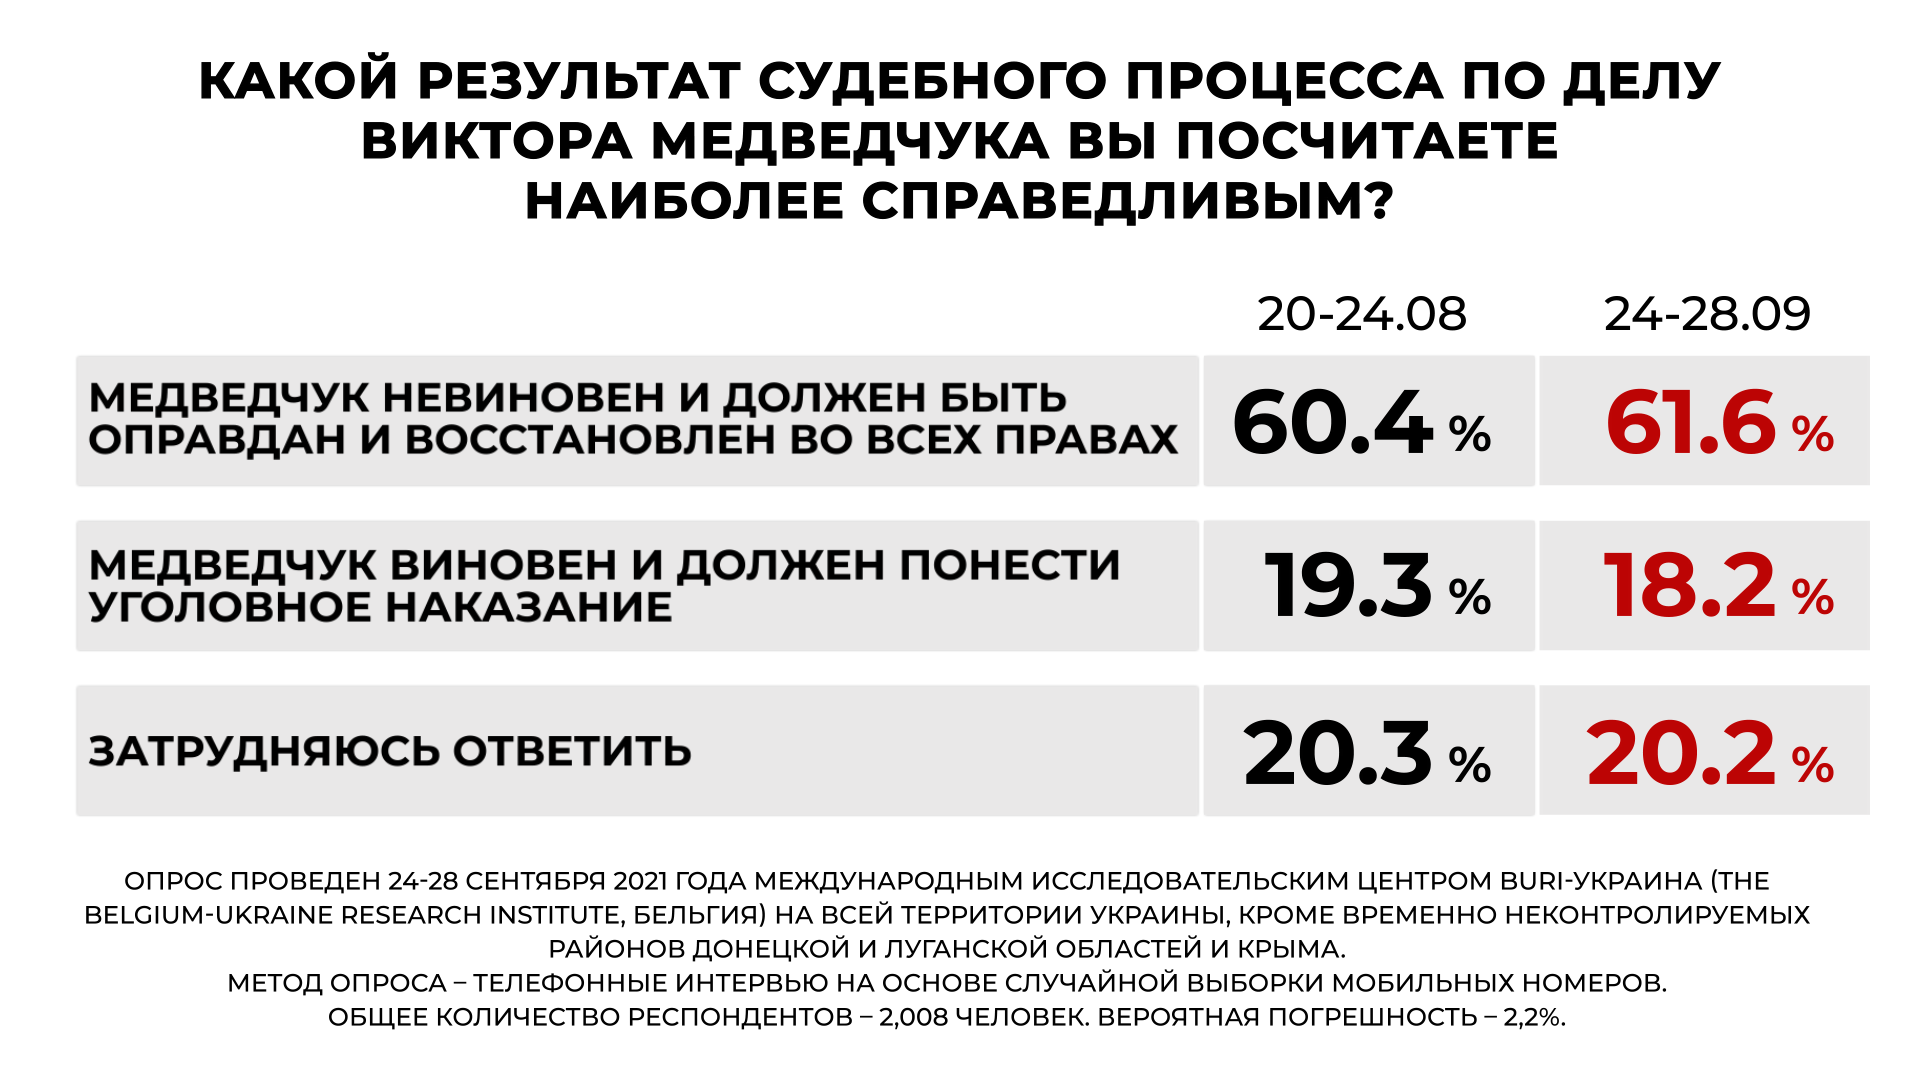 Преследуя Медведчука власть отвлекает внимание людей от проблем, - западные социологи об опросе украинцев - фото 3